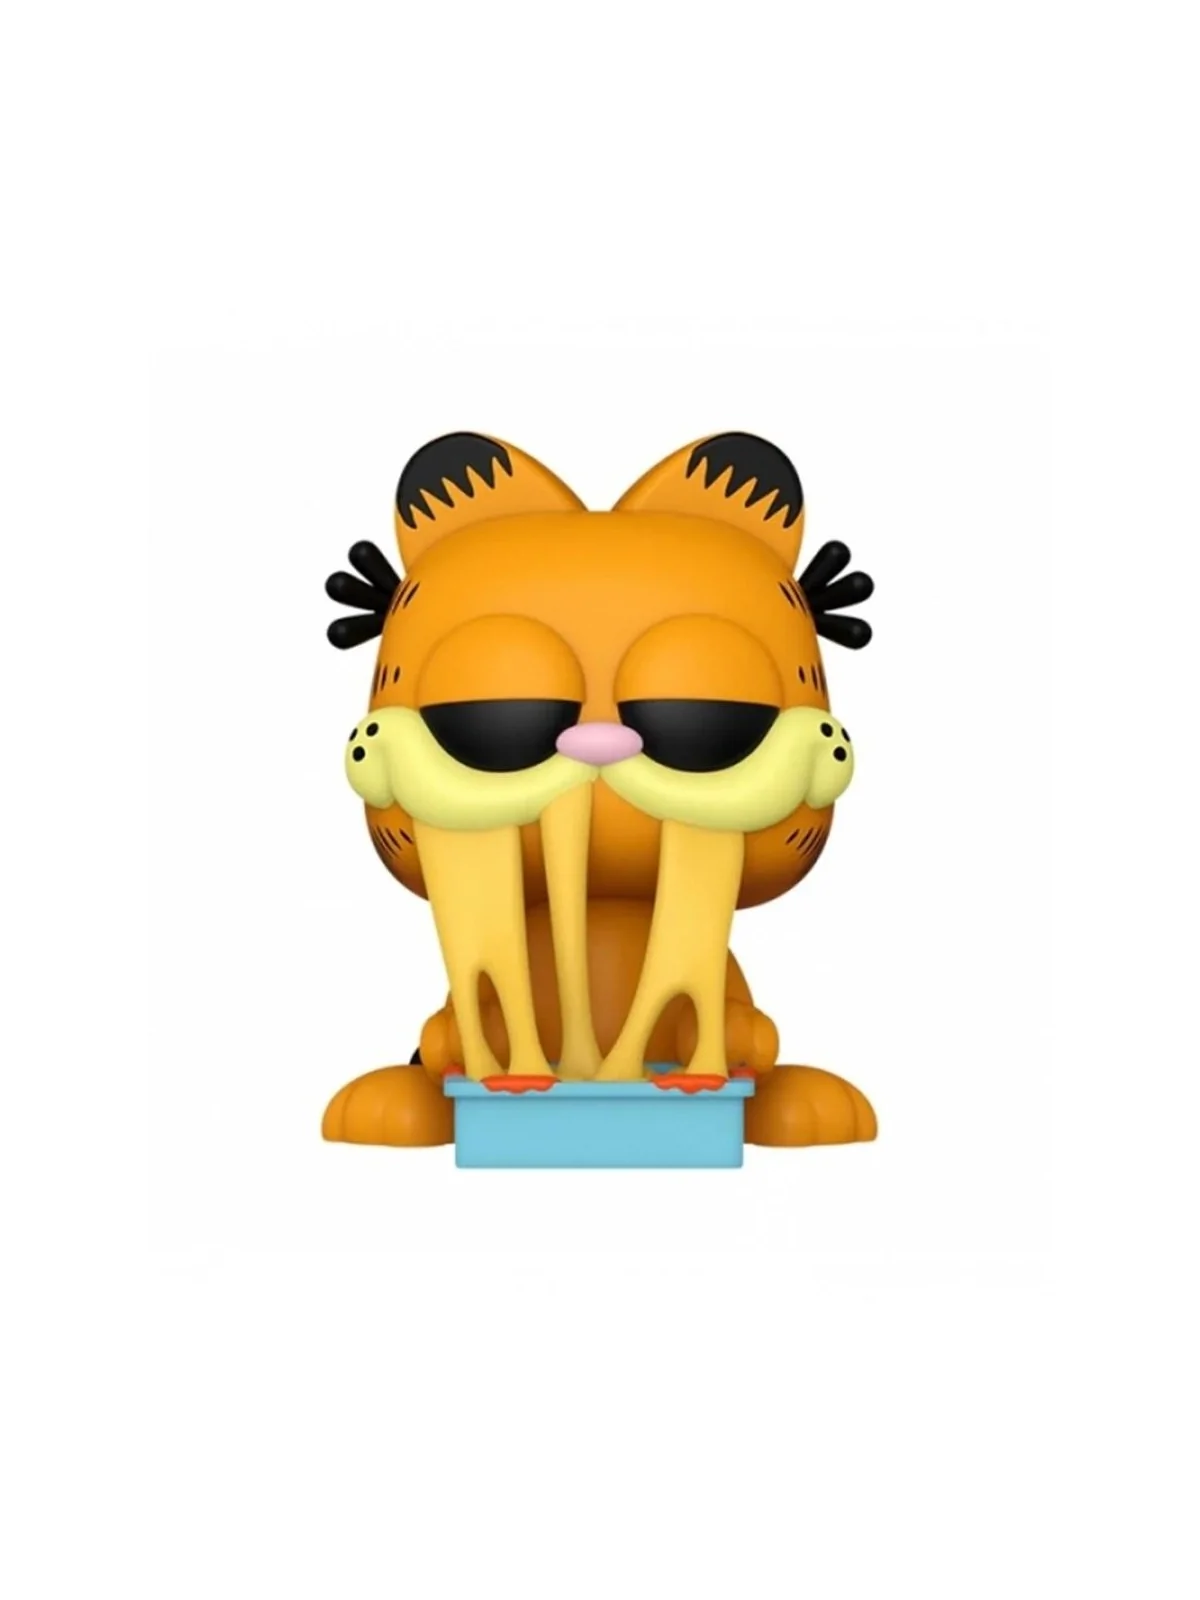 Comprar Funko POP! Garfield: Garfield with Lasagna (39) barato al mejo